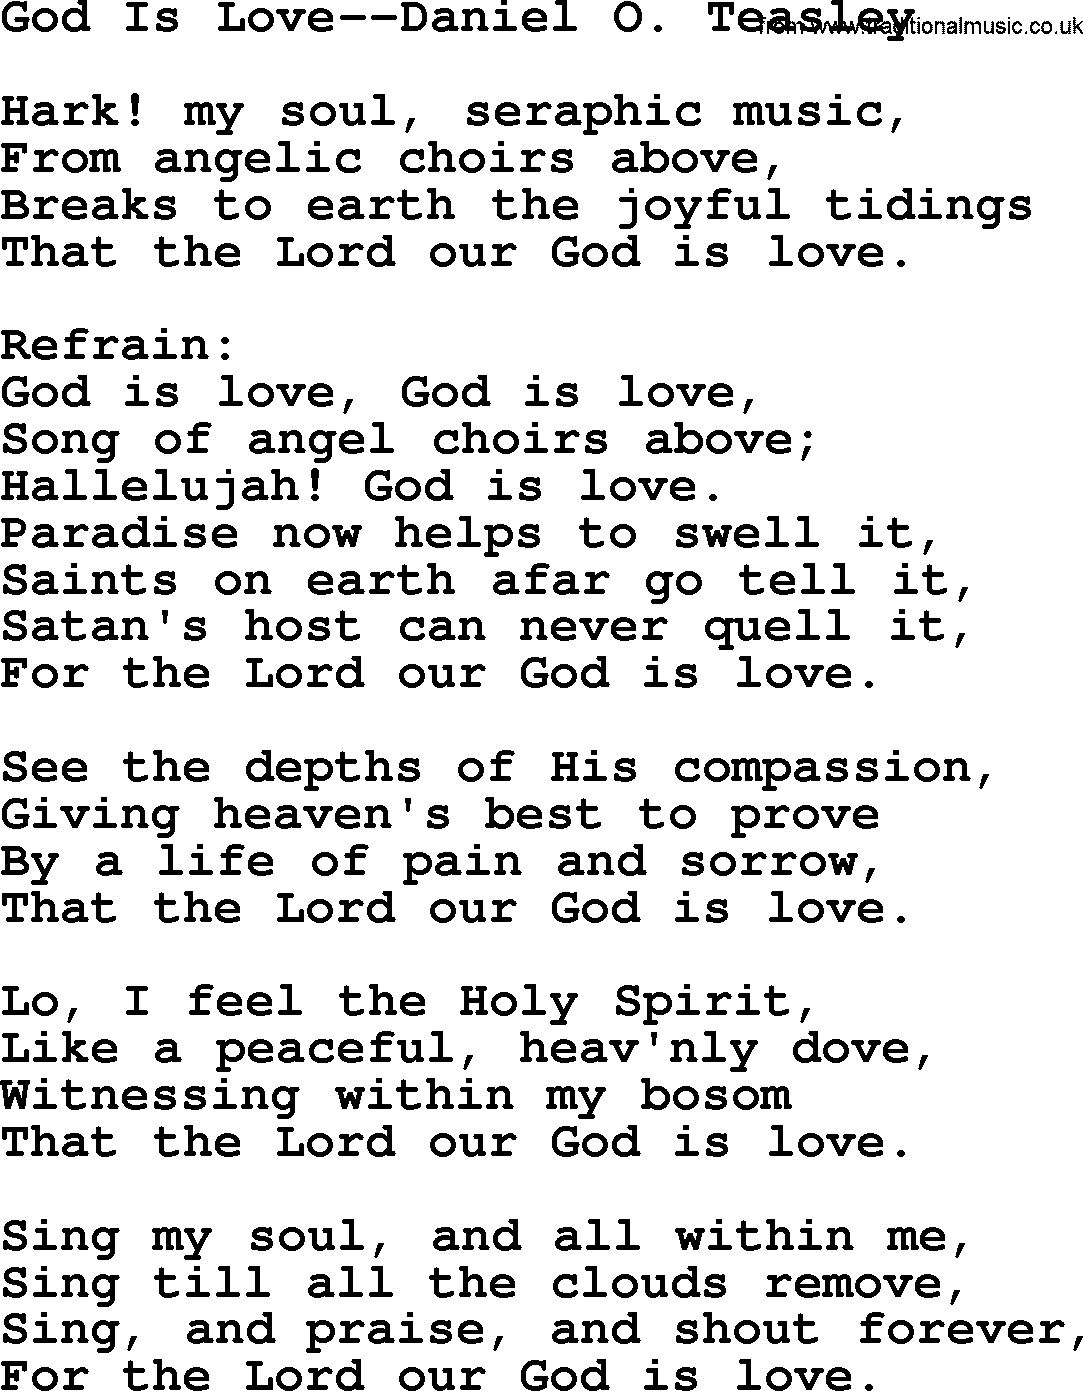 Hymns about Angels, Hymn: God Is Love--daniel O. Teasley.txt lyrics with PDF